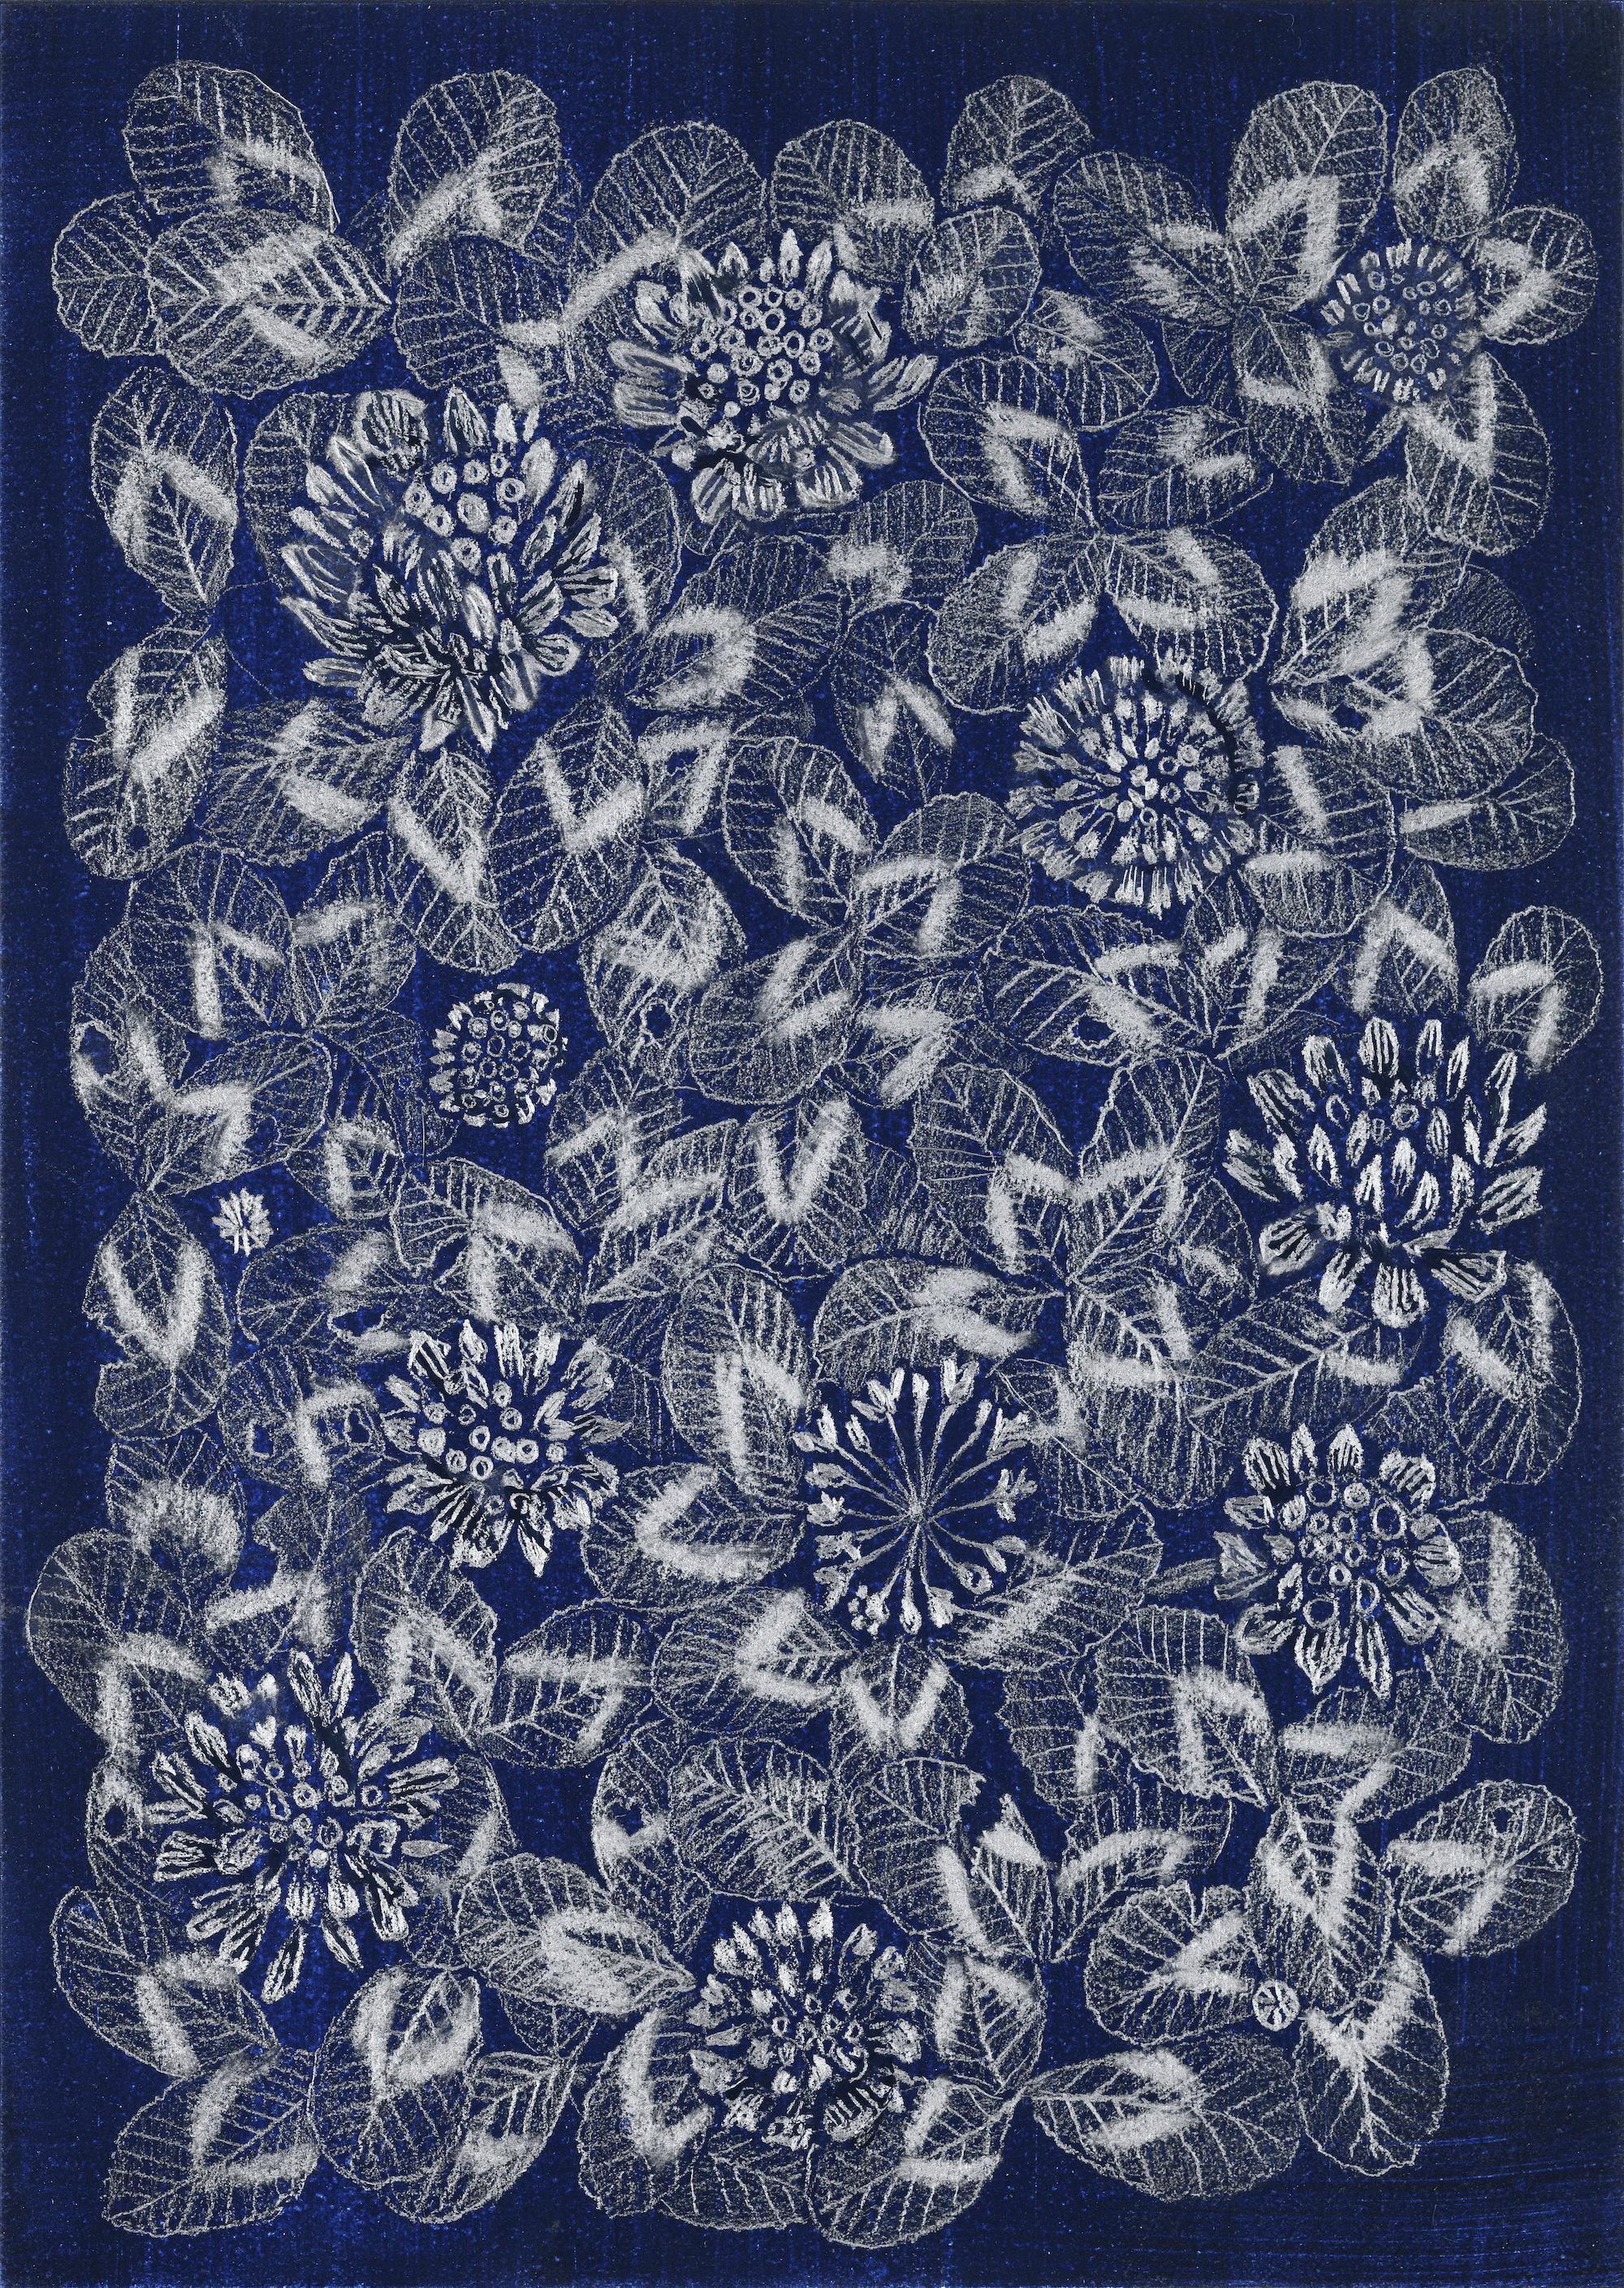 Tableau trèfle bleu 1, dessin de nature morte florale à motifs